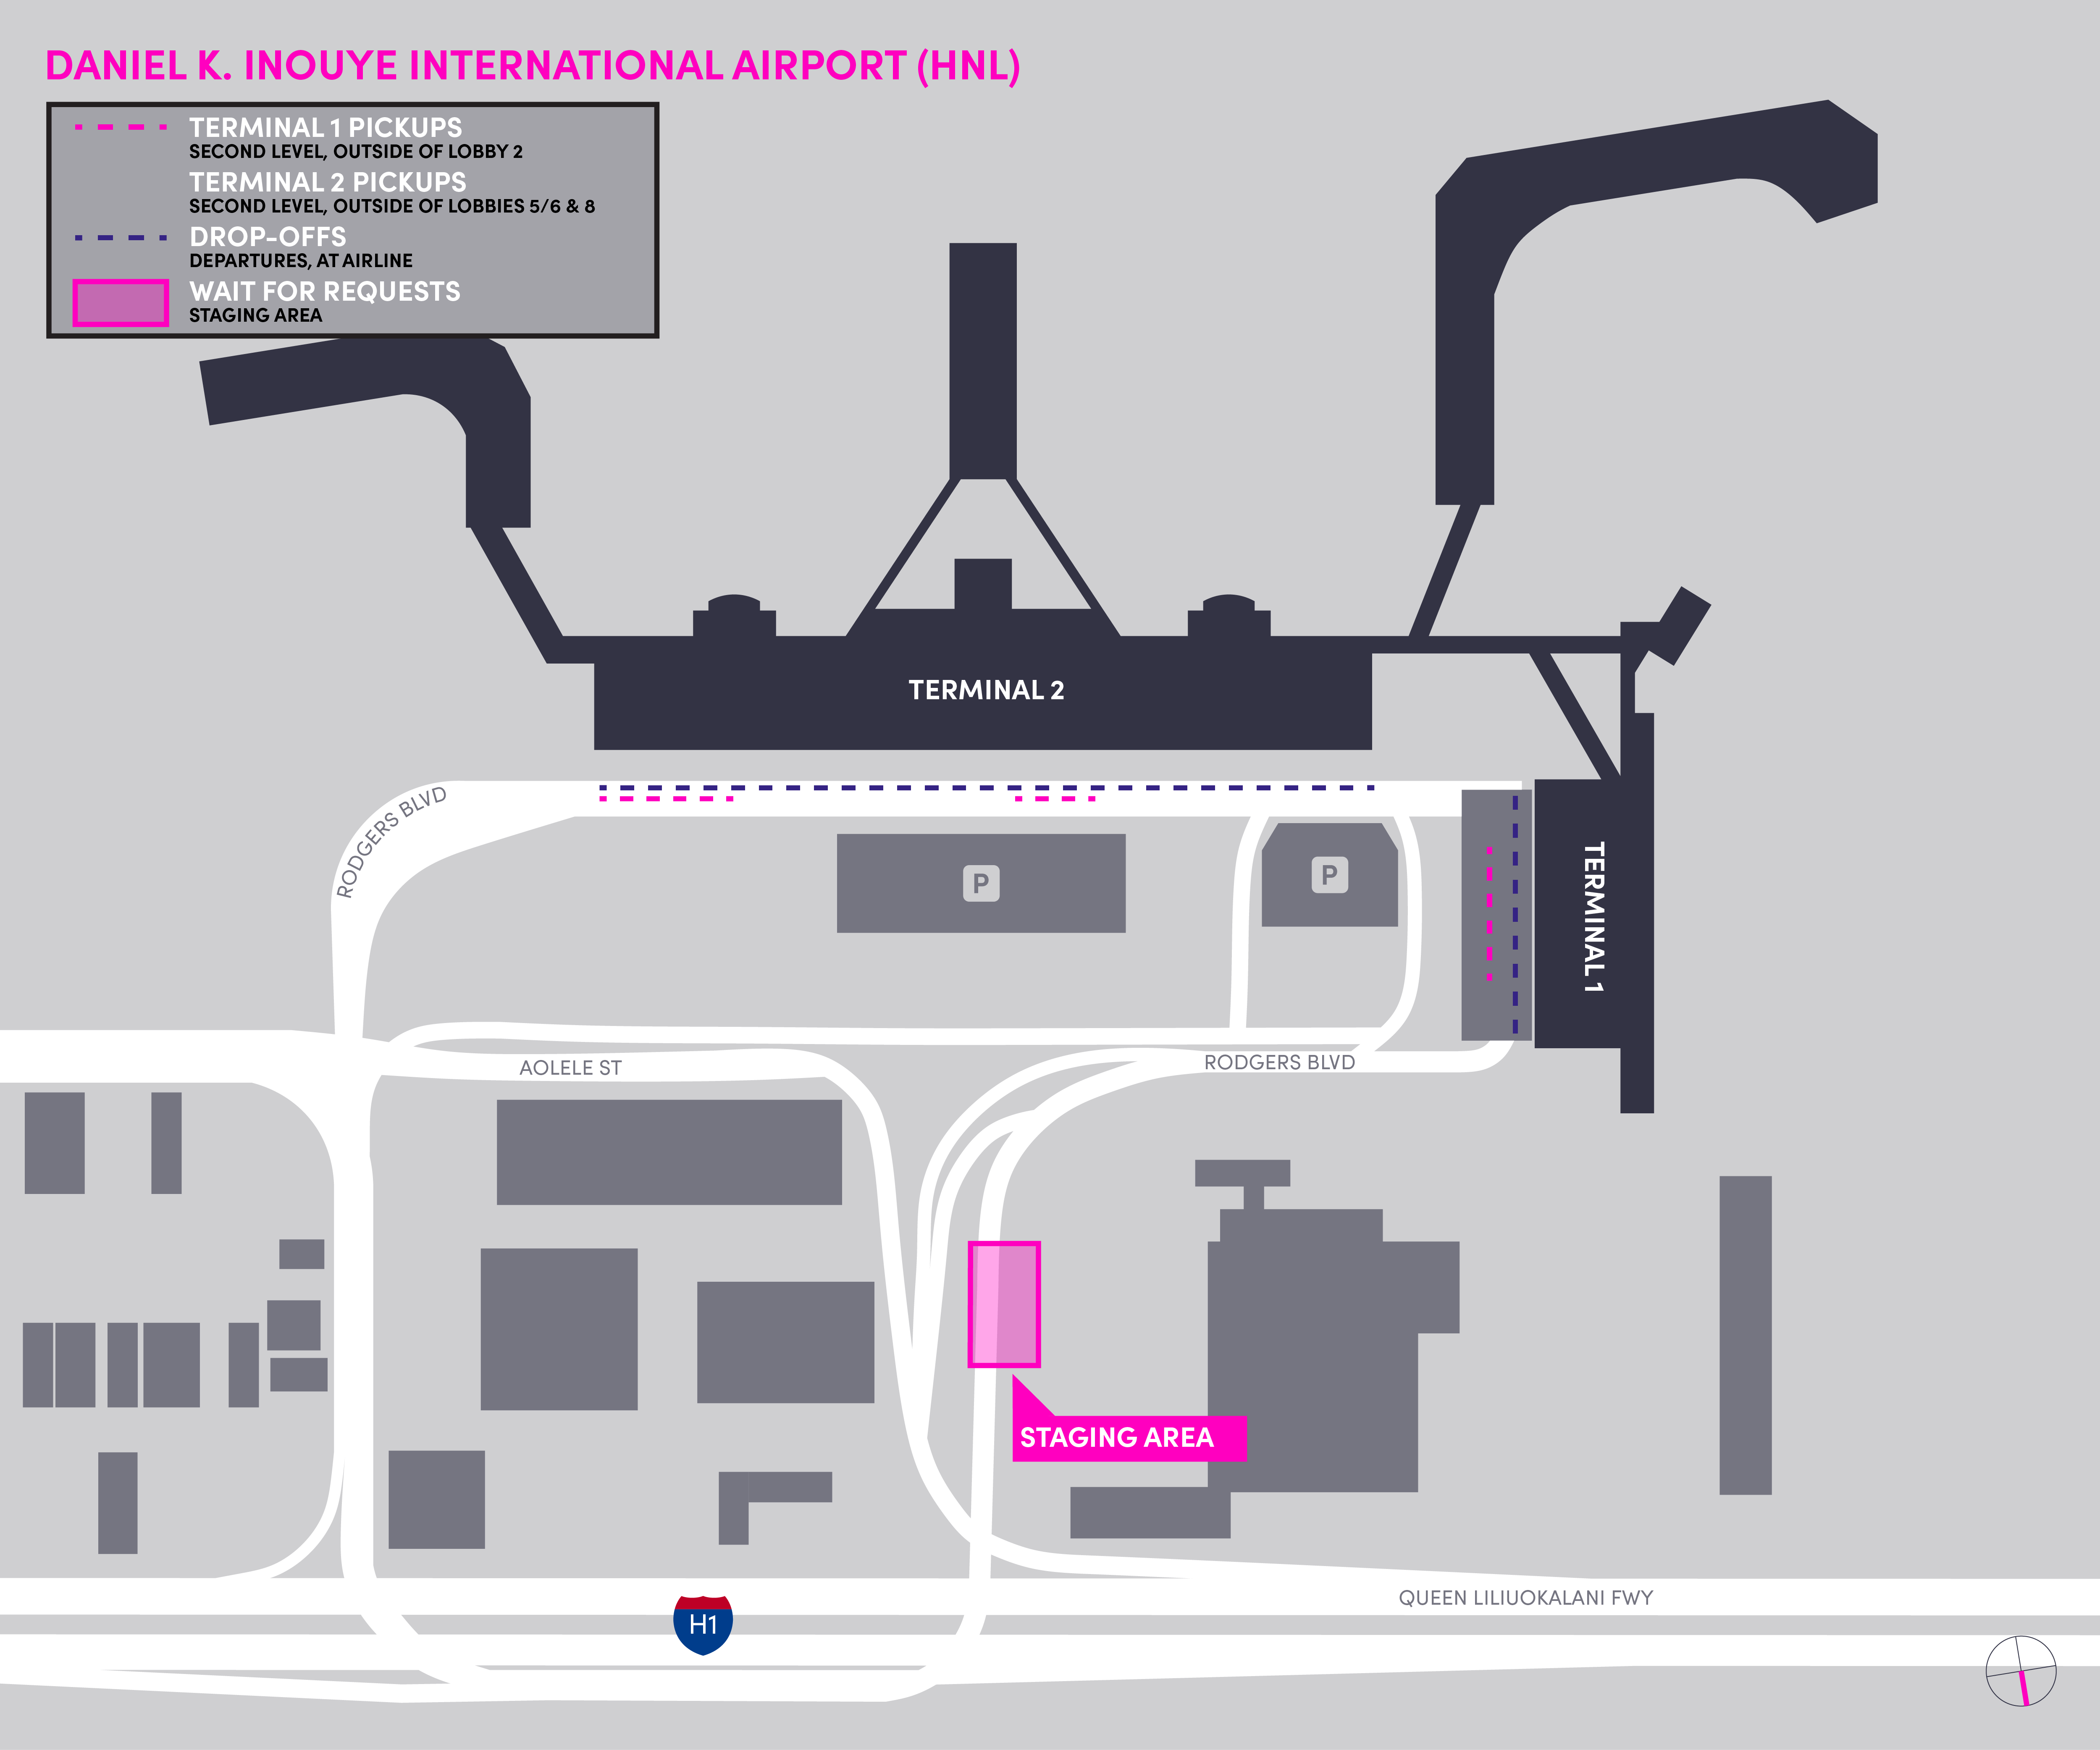 Plan de la zone d'attente de l'aéroport international Daniel K. Inouye